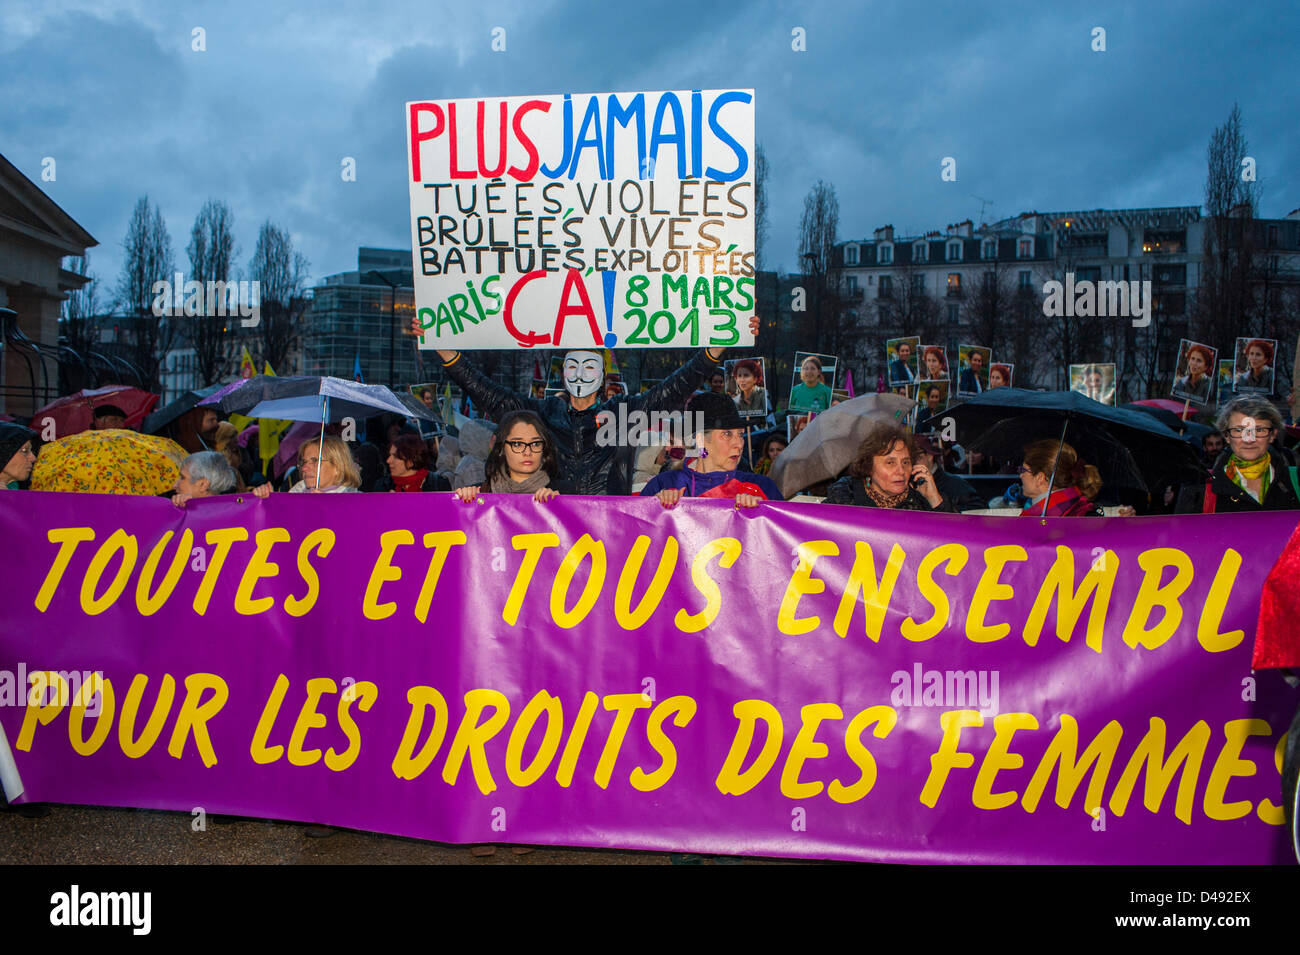 Paris, France. Le 8 mars, des groupes de féministes françaises défilent lors de la manifestation annuelle de la Journée internationale de la femme. Organisation de manifestations et de bannières, marche pour les droits des femmes à l'égalité Banque D'Images